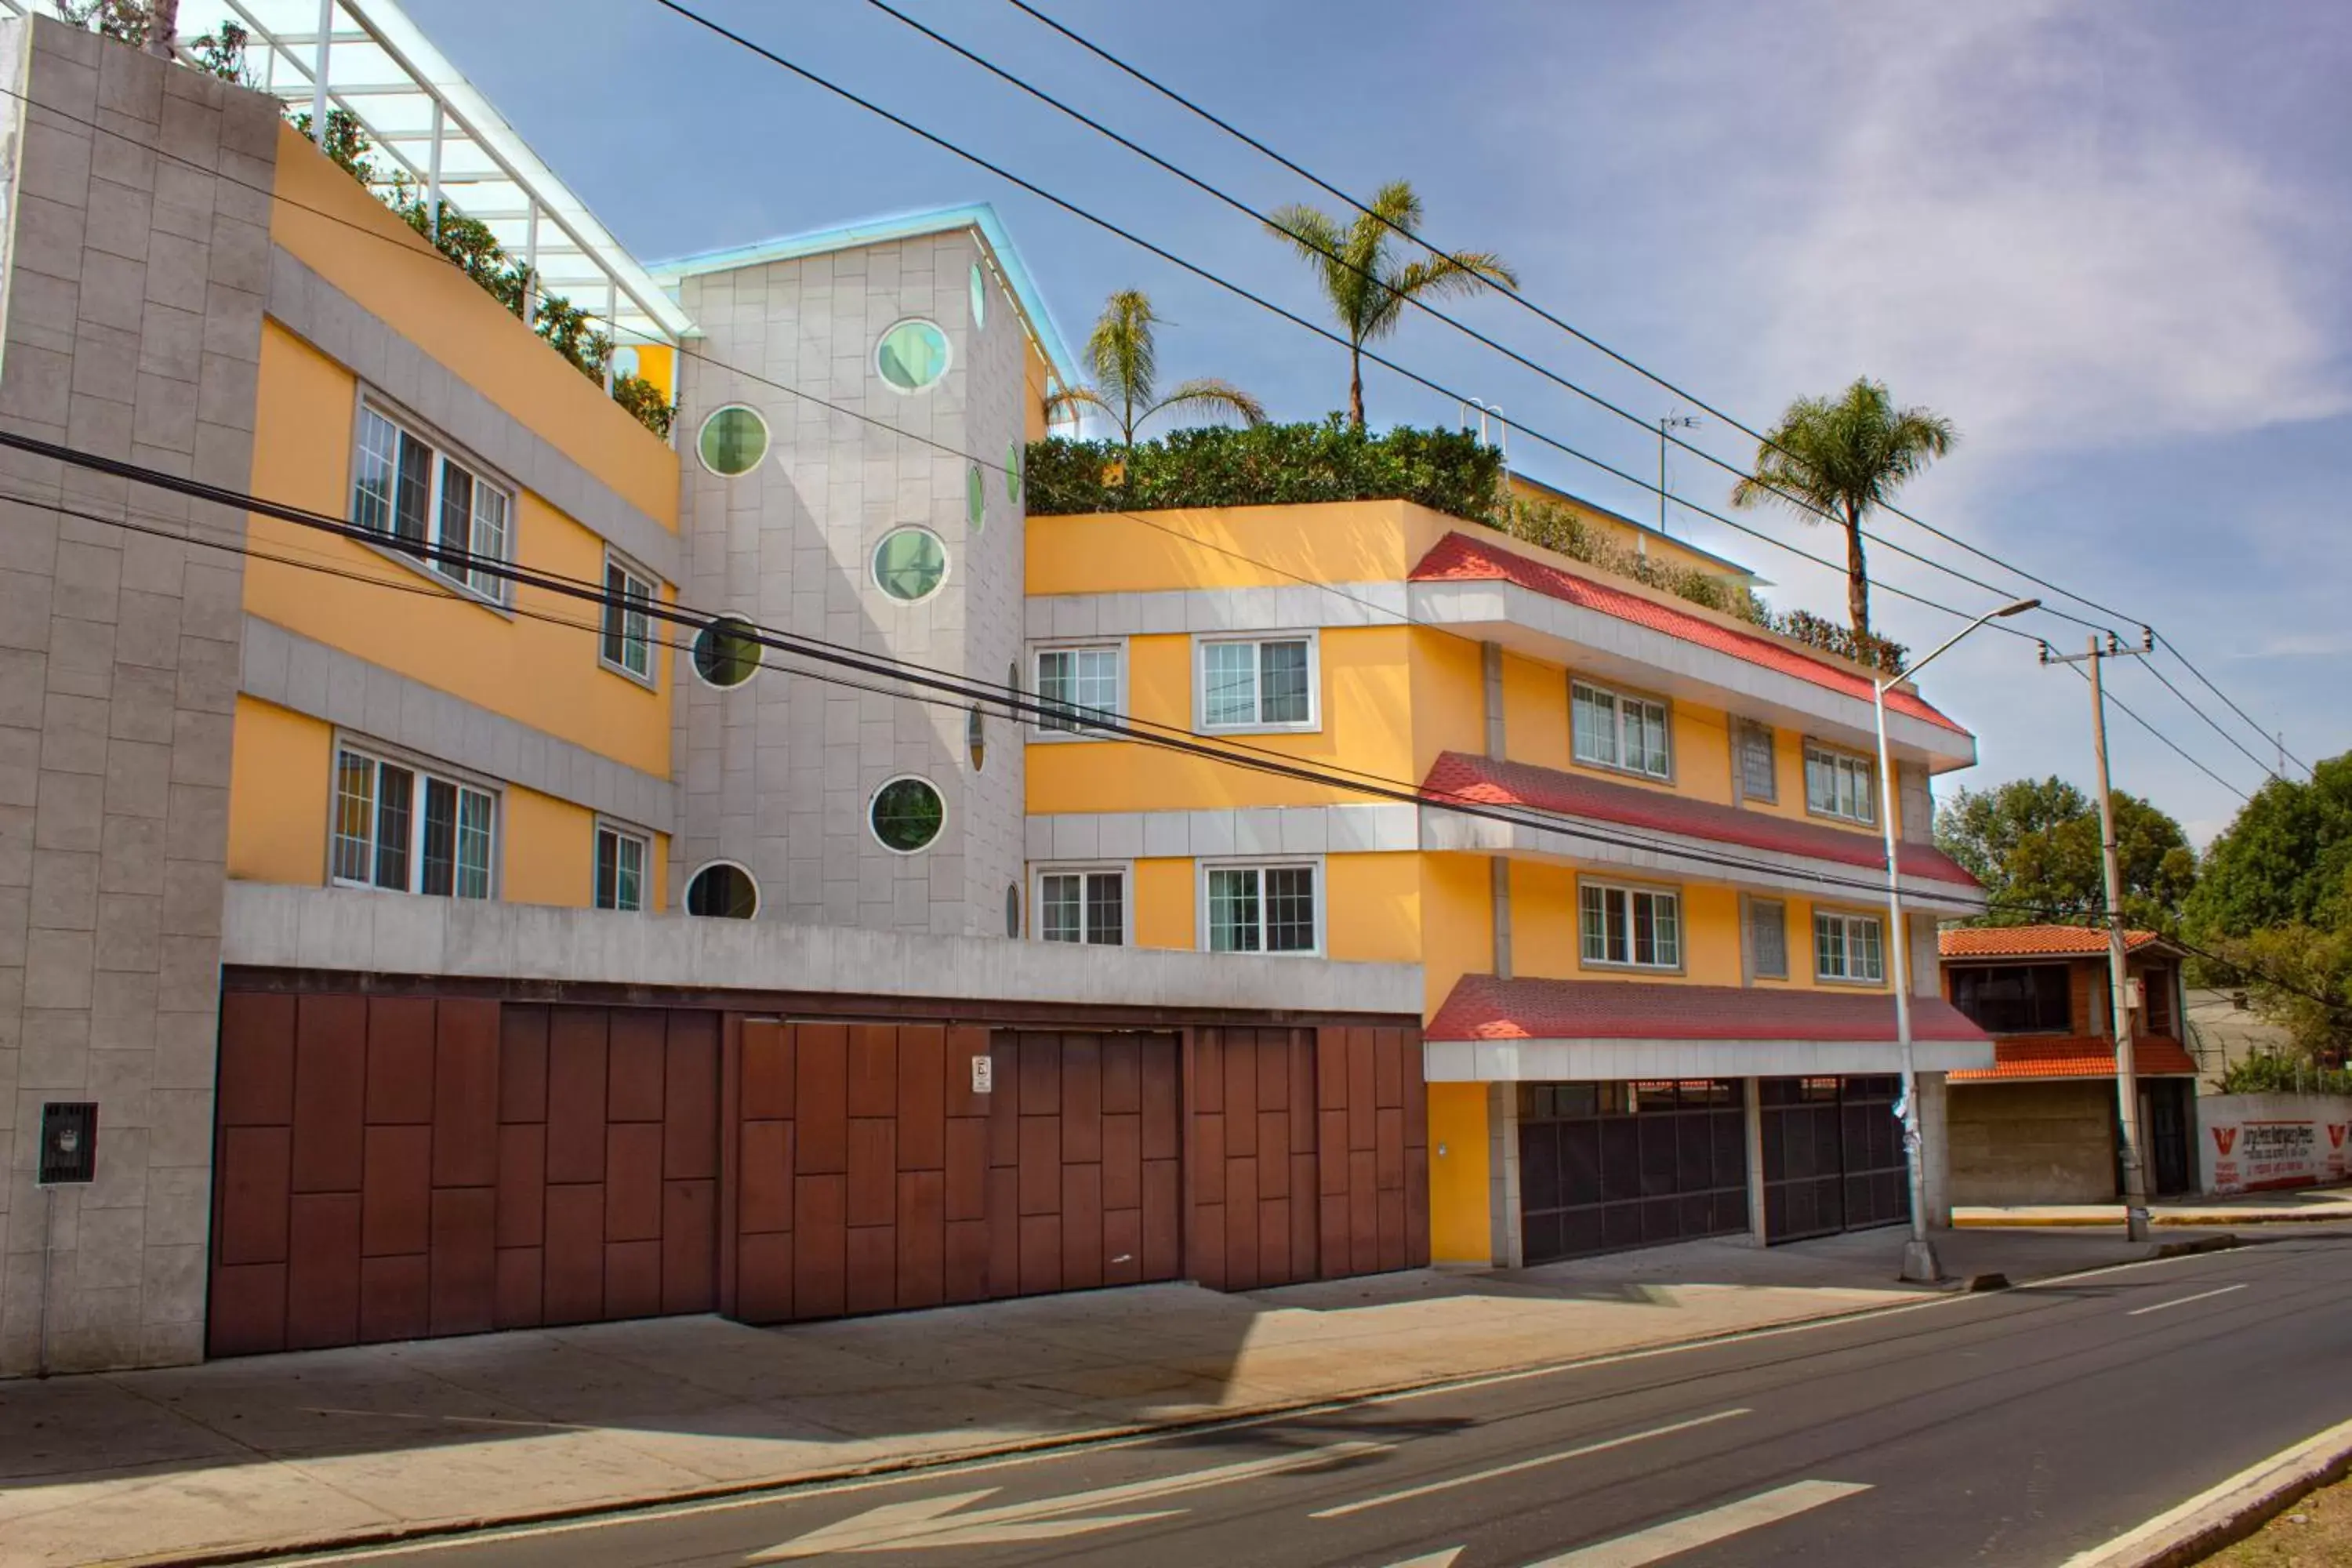 Property Building in La Casa del Reloj - Zona de Hospitales